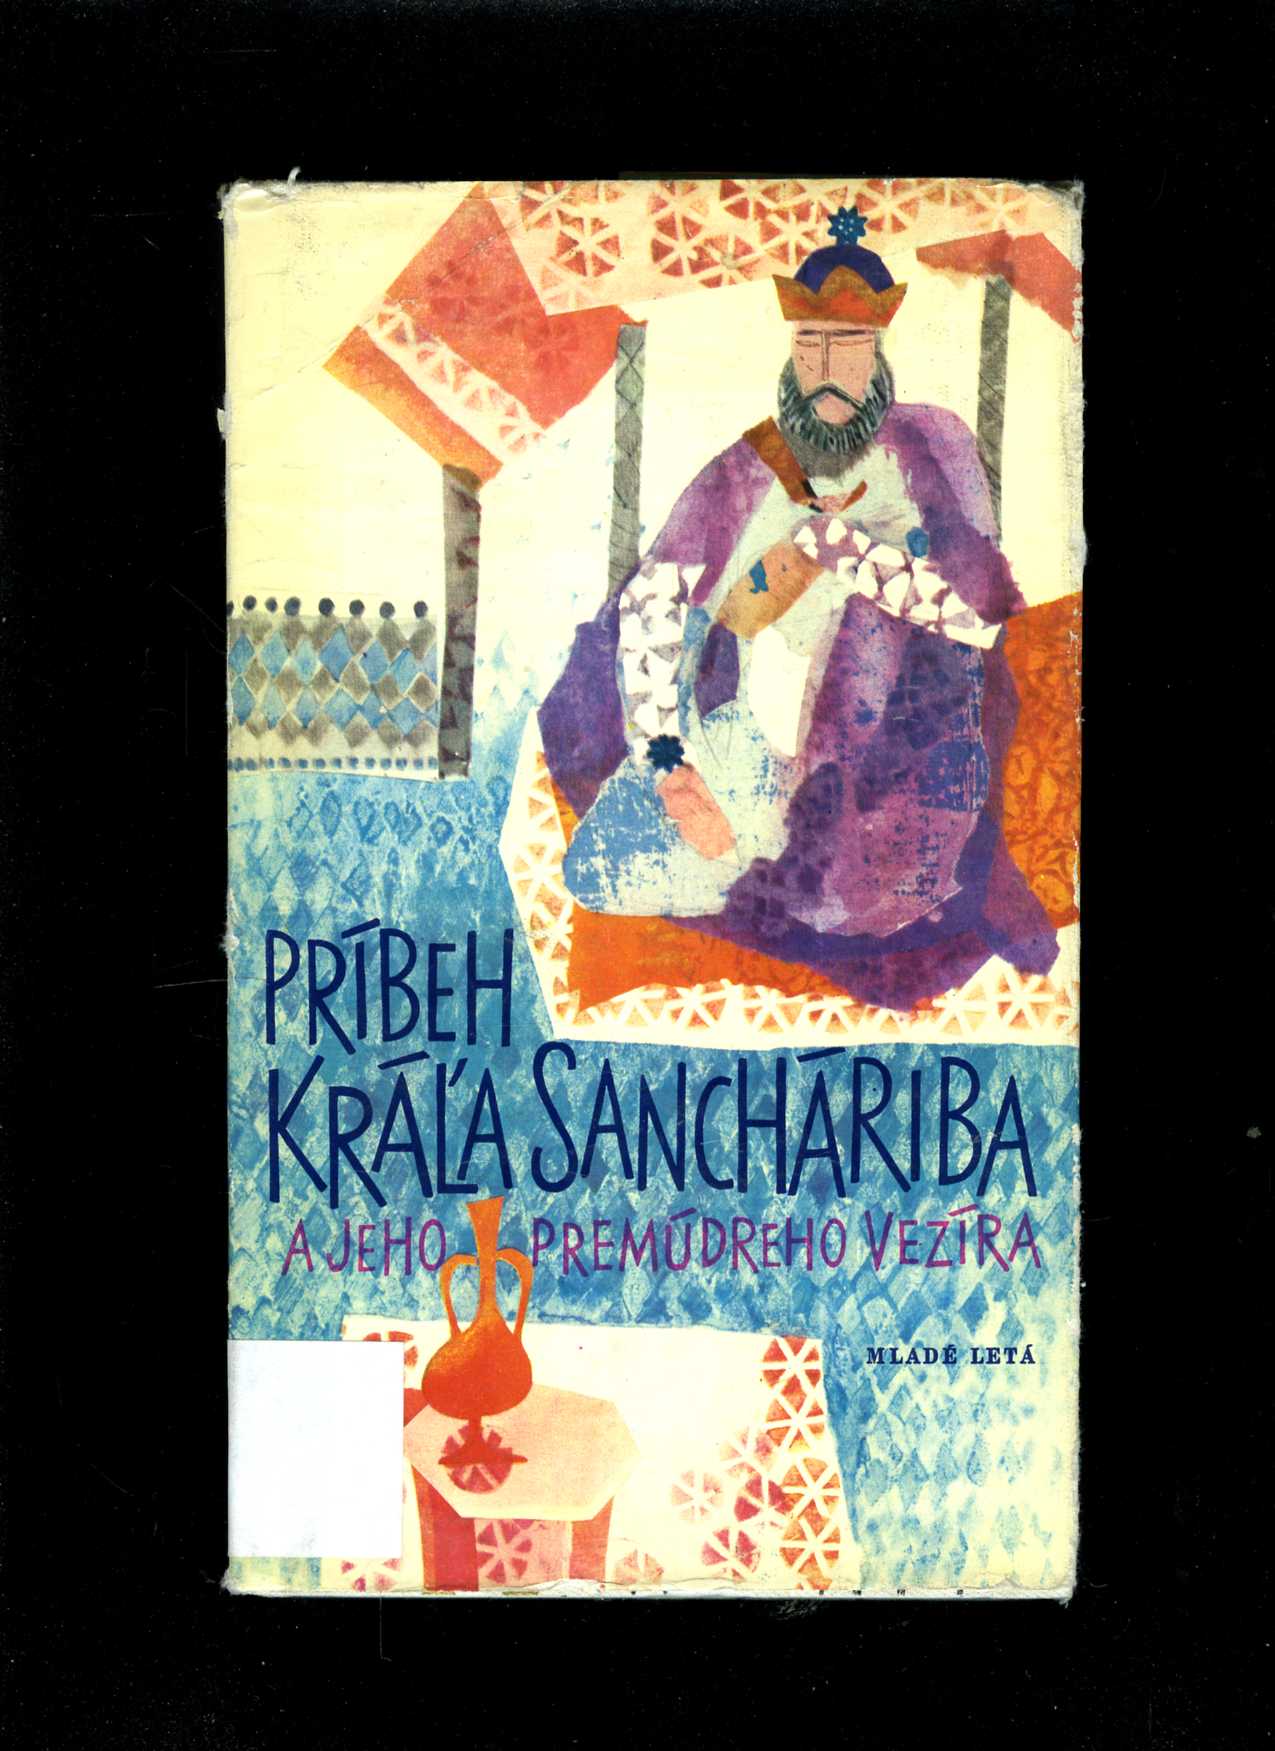 Príbeh kráľa Sancháriba a jeho premúdreho vezíra